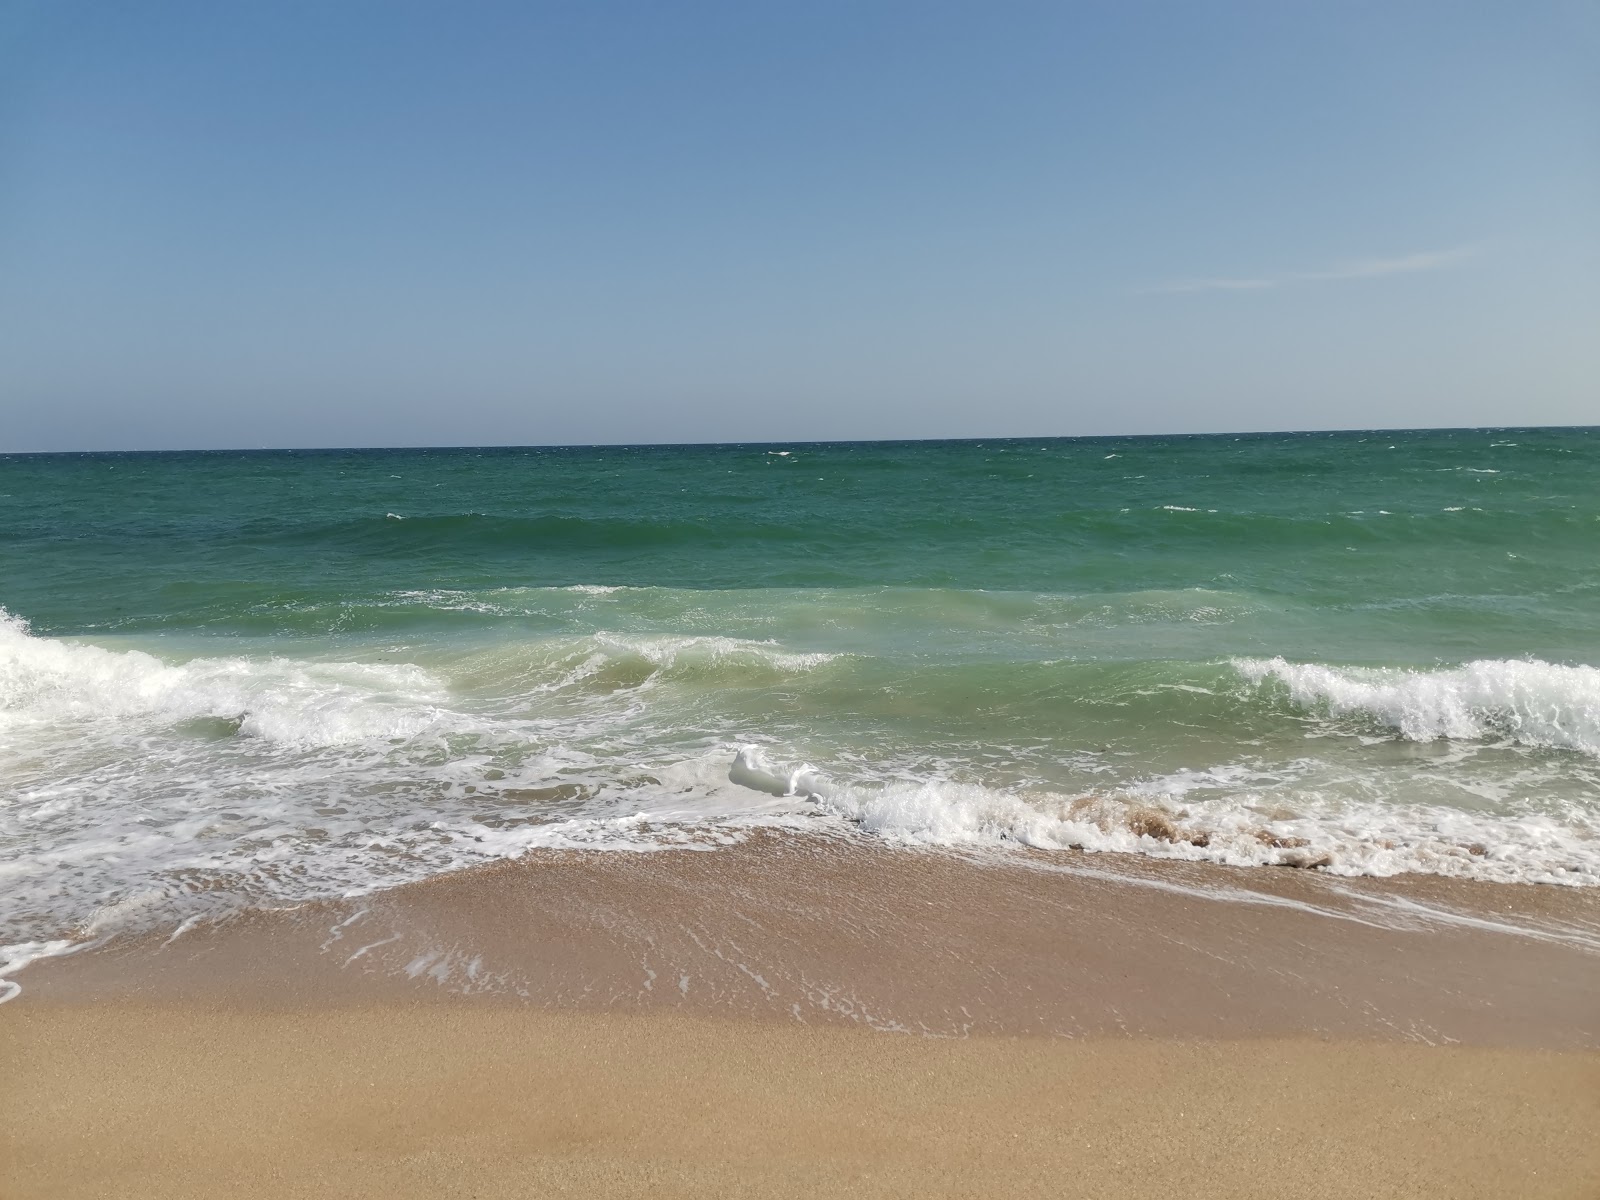 Zdjęcie Boeme beach - popularne miejsce wśród znawców relaksu